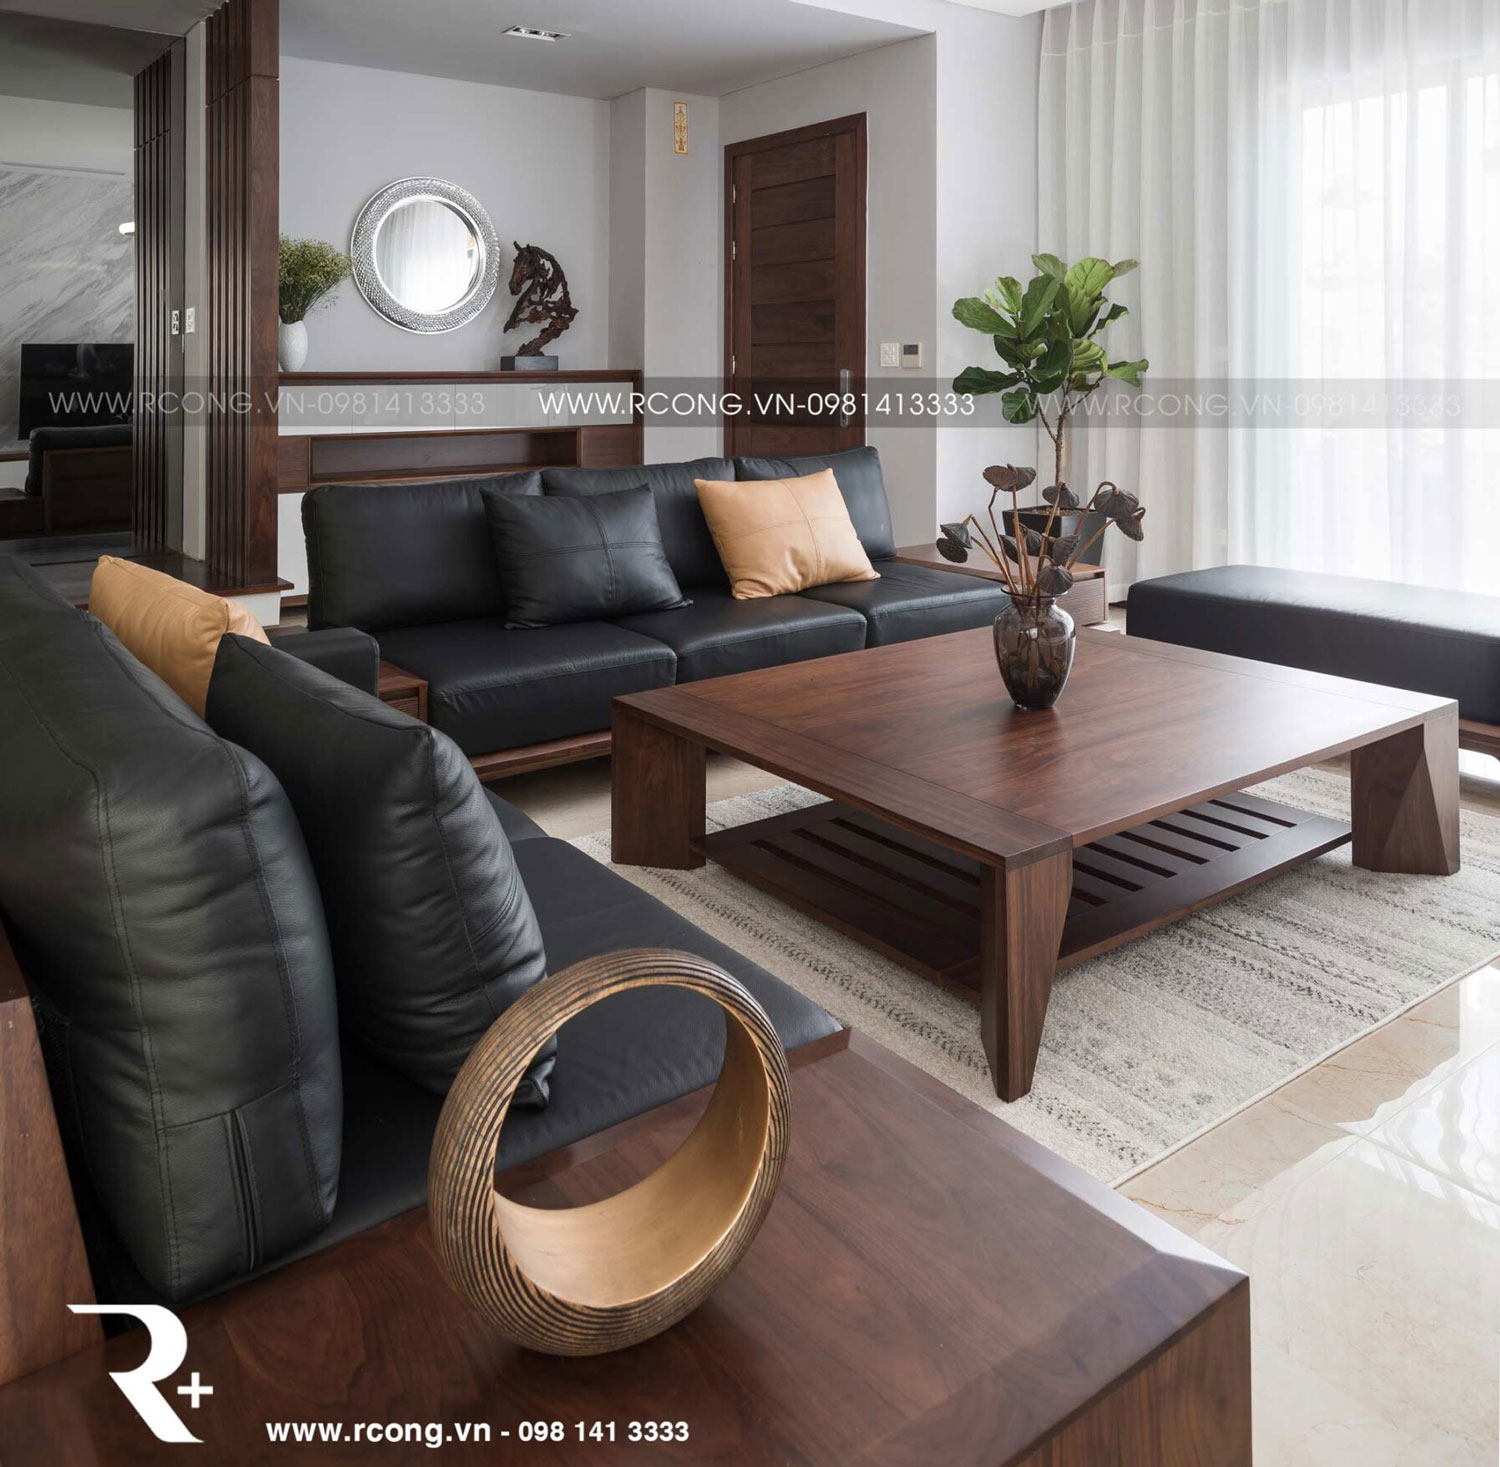 Sofa gỗ đồng gia là lựa chọn thông minh cho không gian phòng khách hiện đại. Với tính năng đa dạng và thiết kế tinh tế, sofa gỗ đồng gia mang đến sự ấm cúng và sang trọng cho ngôi nhà của bạn. Những thanh gỗ tự nhiên kết hợp với các màu sắc tươi tắn tạo nên một không gian sống động và hiện đại. Hãy đón xem hình ảnh về sofa gỗ đồng gia để cảm nhận sự đẹp và tiện ích của sản phẩm này.